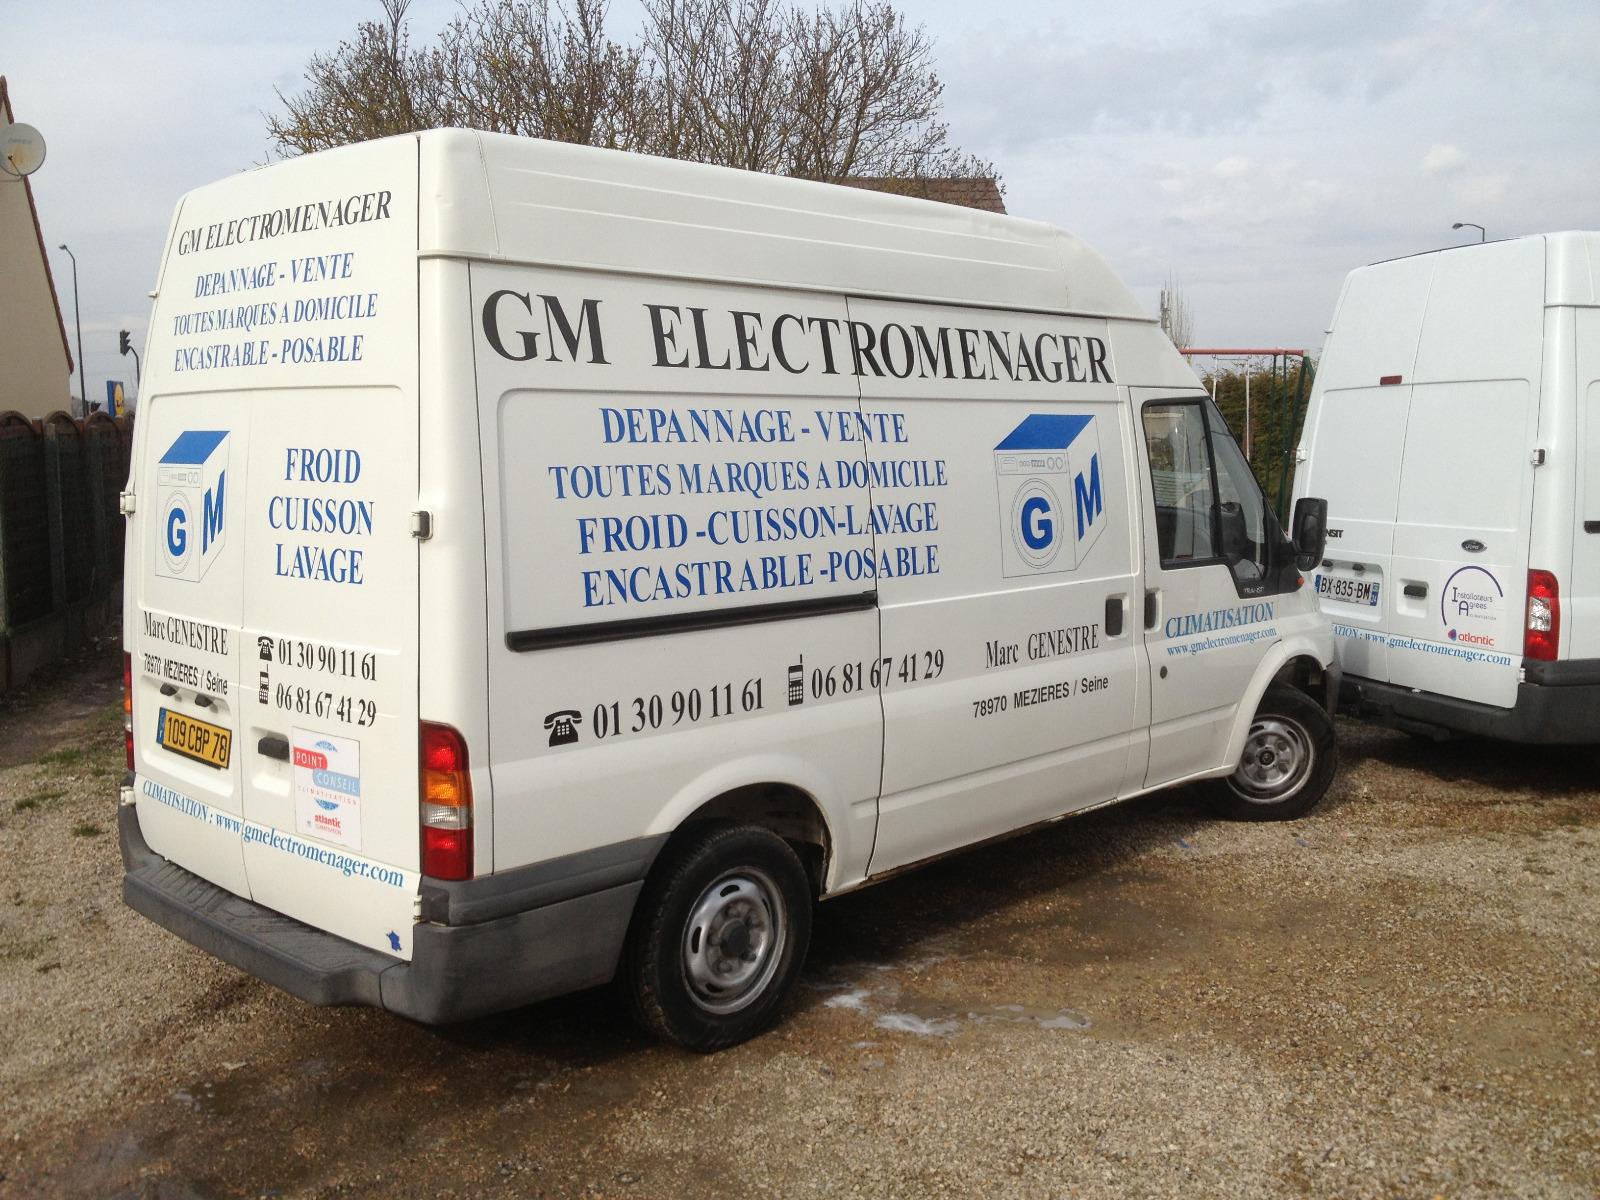 Véhicule GM Electroménager à Mézières sur Seine - Installation de votre climatisation